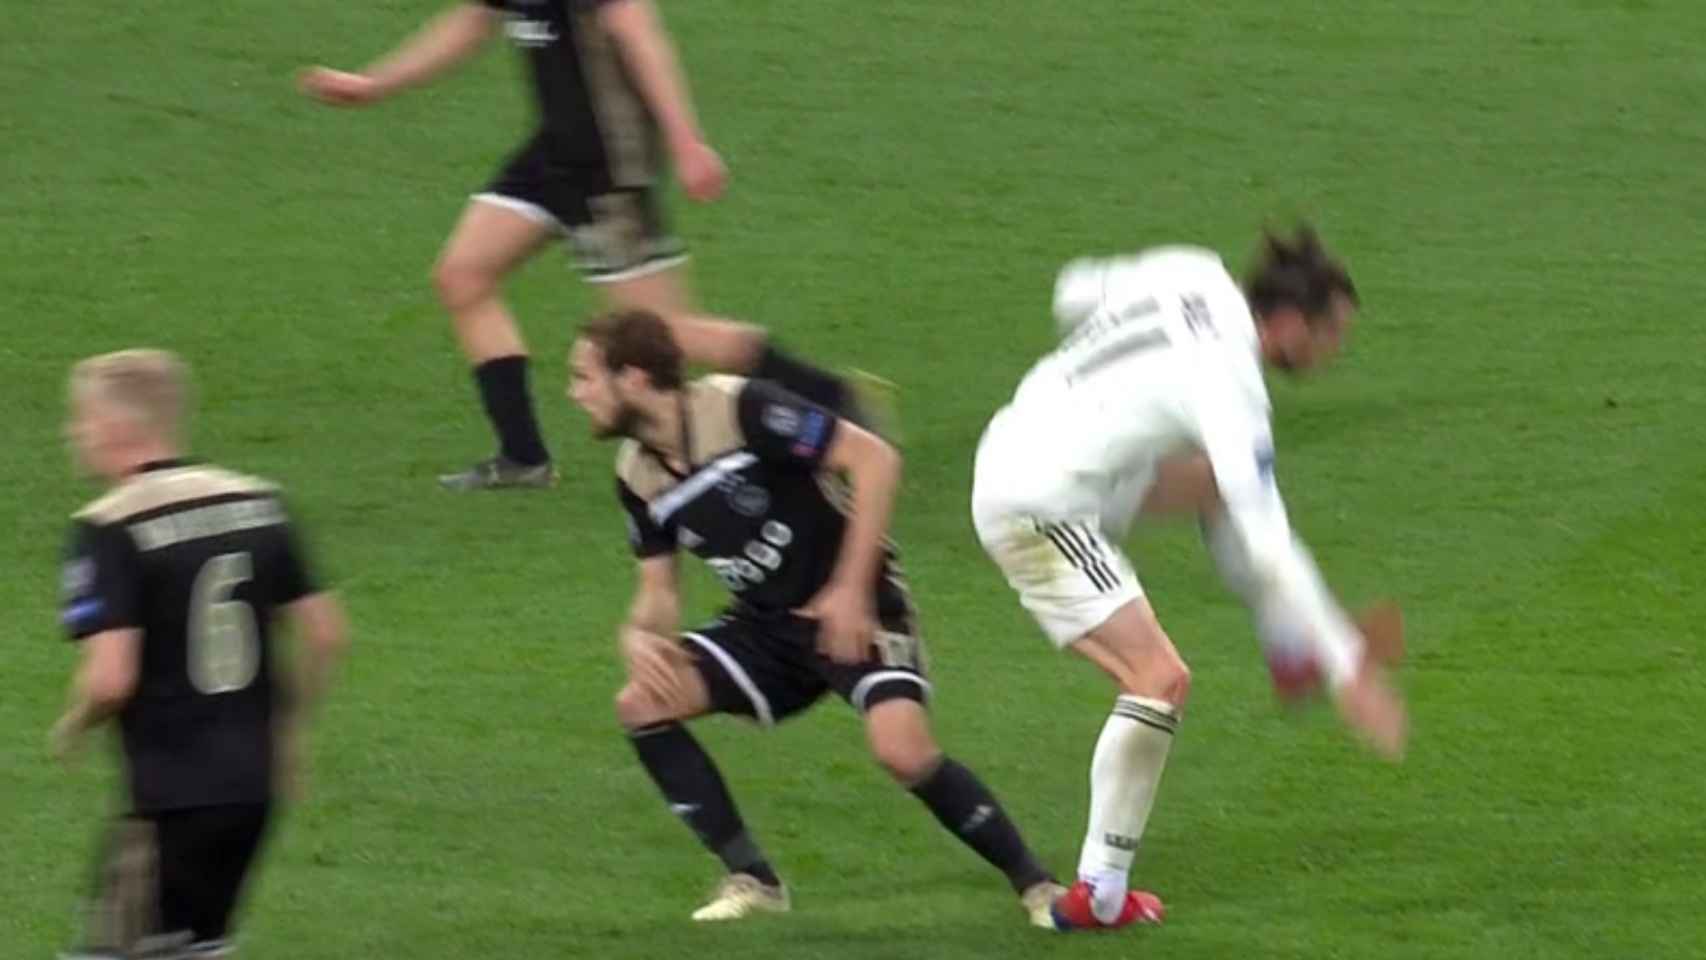 Duro golpe de Bale en el tobillo